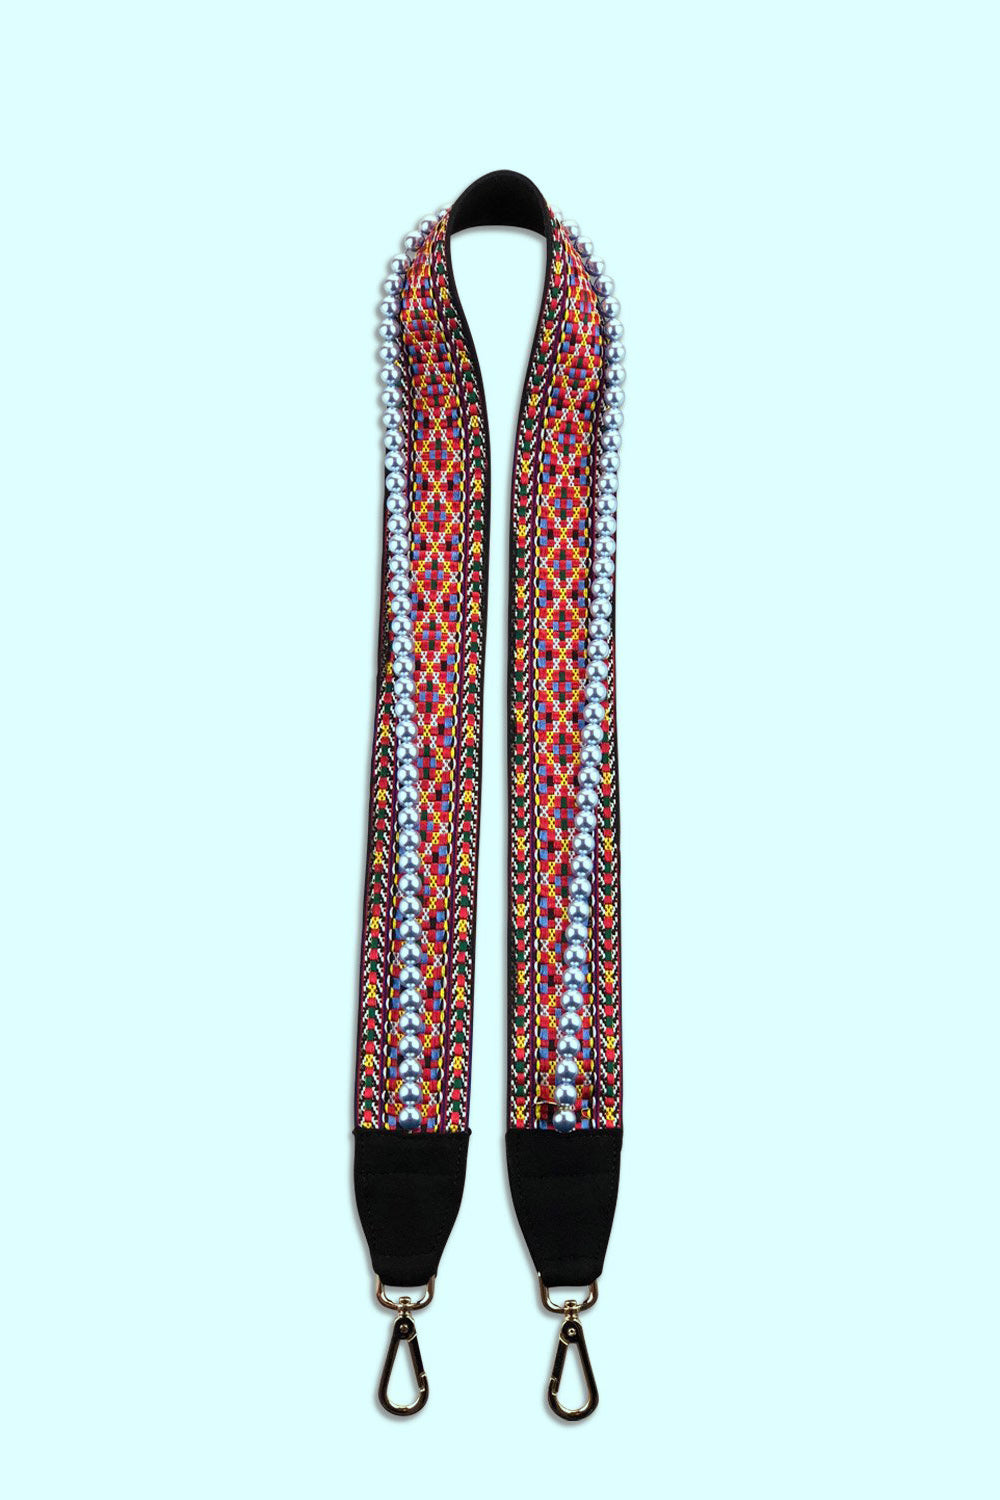 Produktbild Taschenträger aus einem bunten Stoff und edlen Swarovski Perlen von FederRock